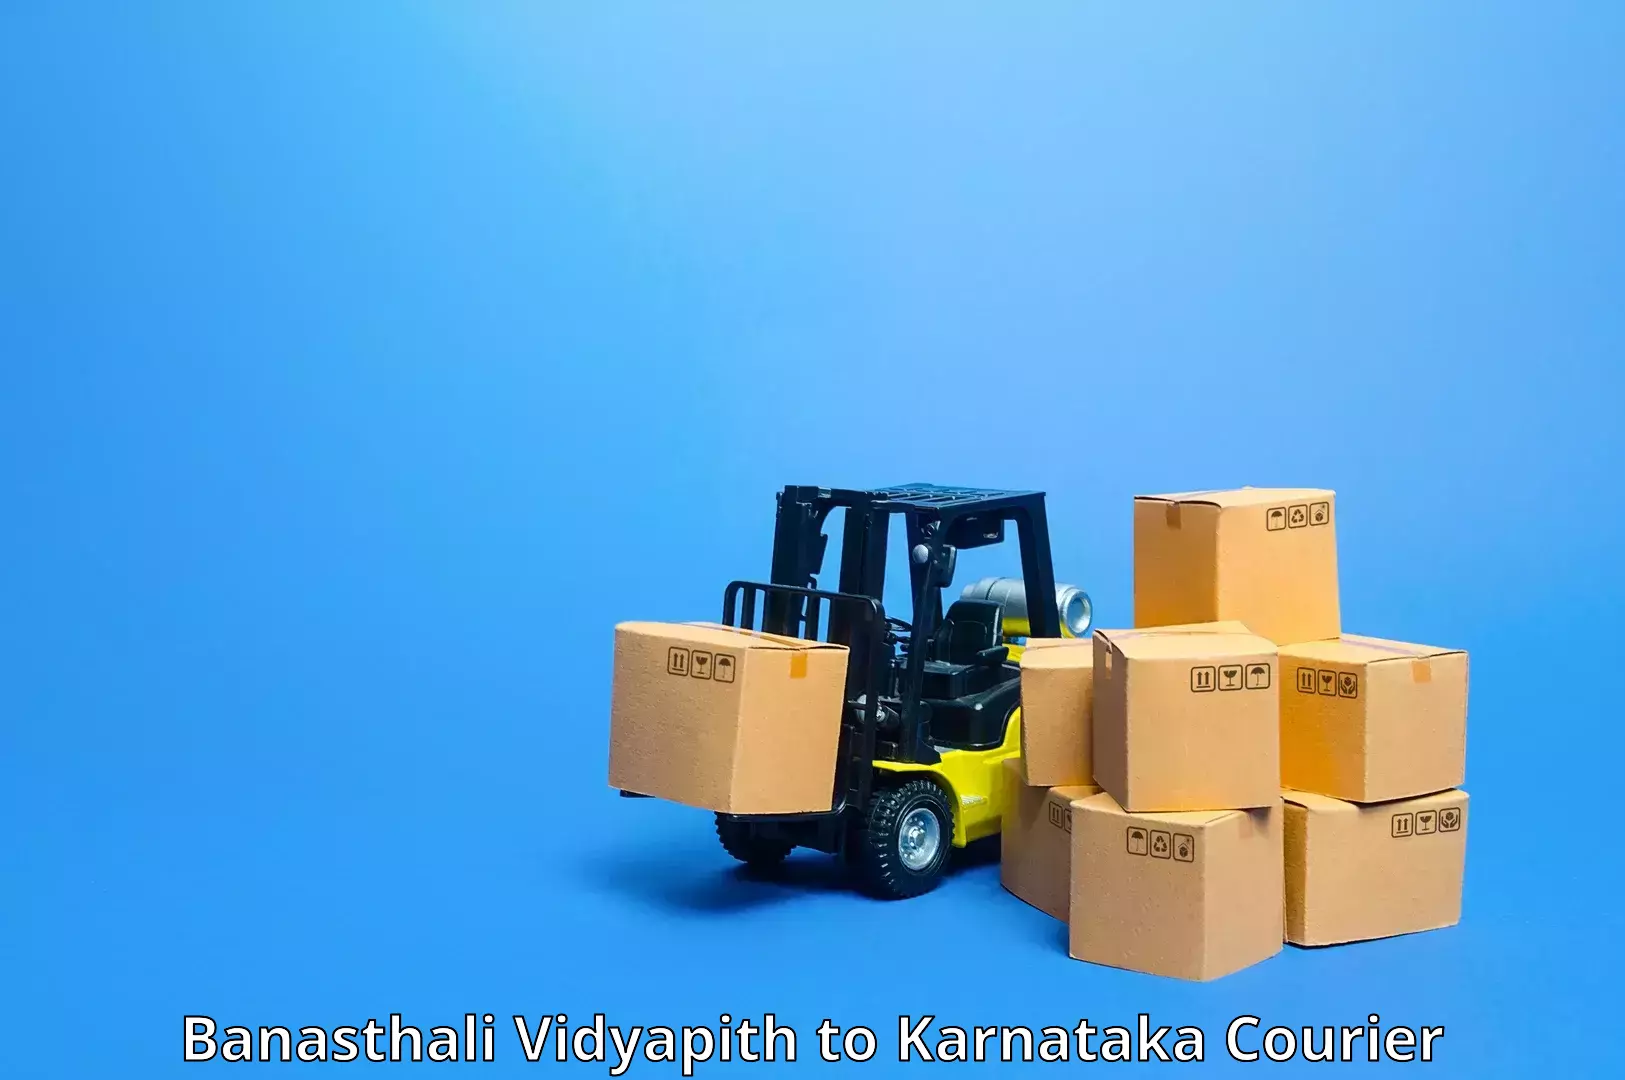 Reliable freight solutions Banasthali Vidyapith to Karnataka